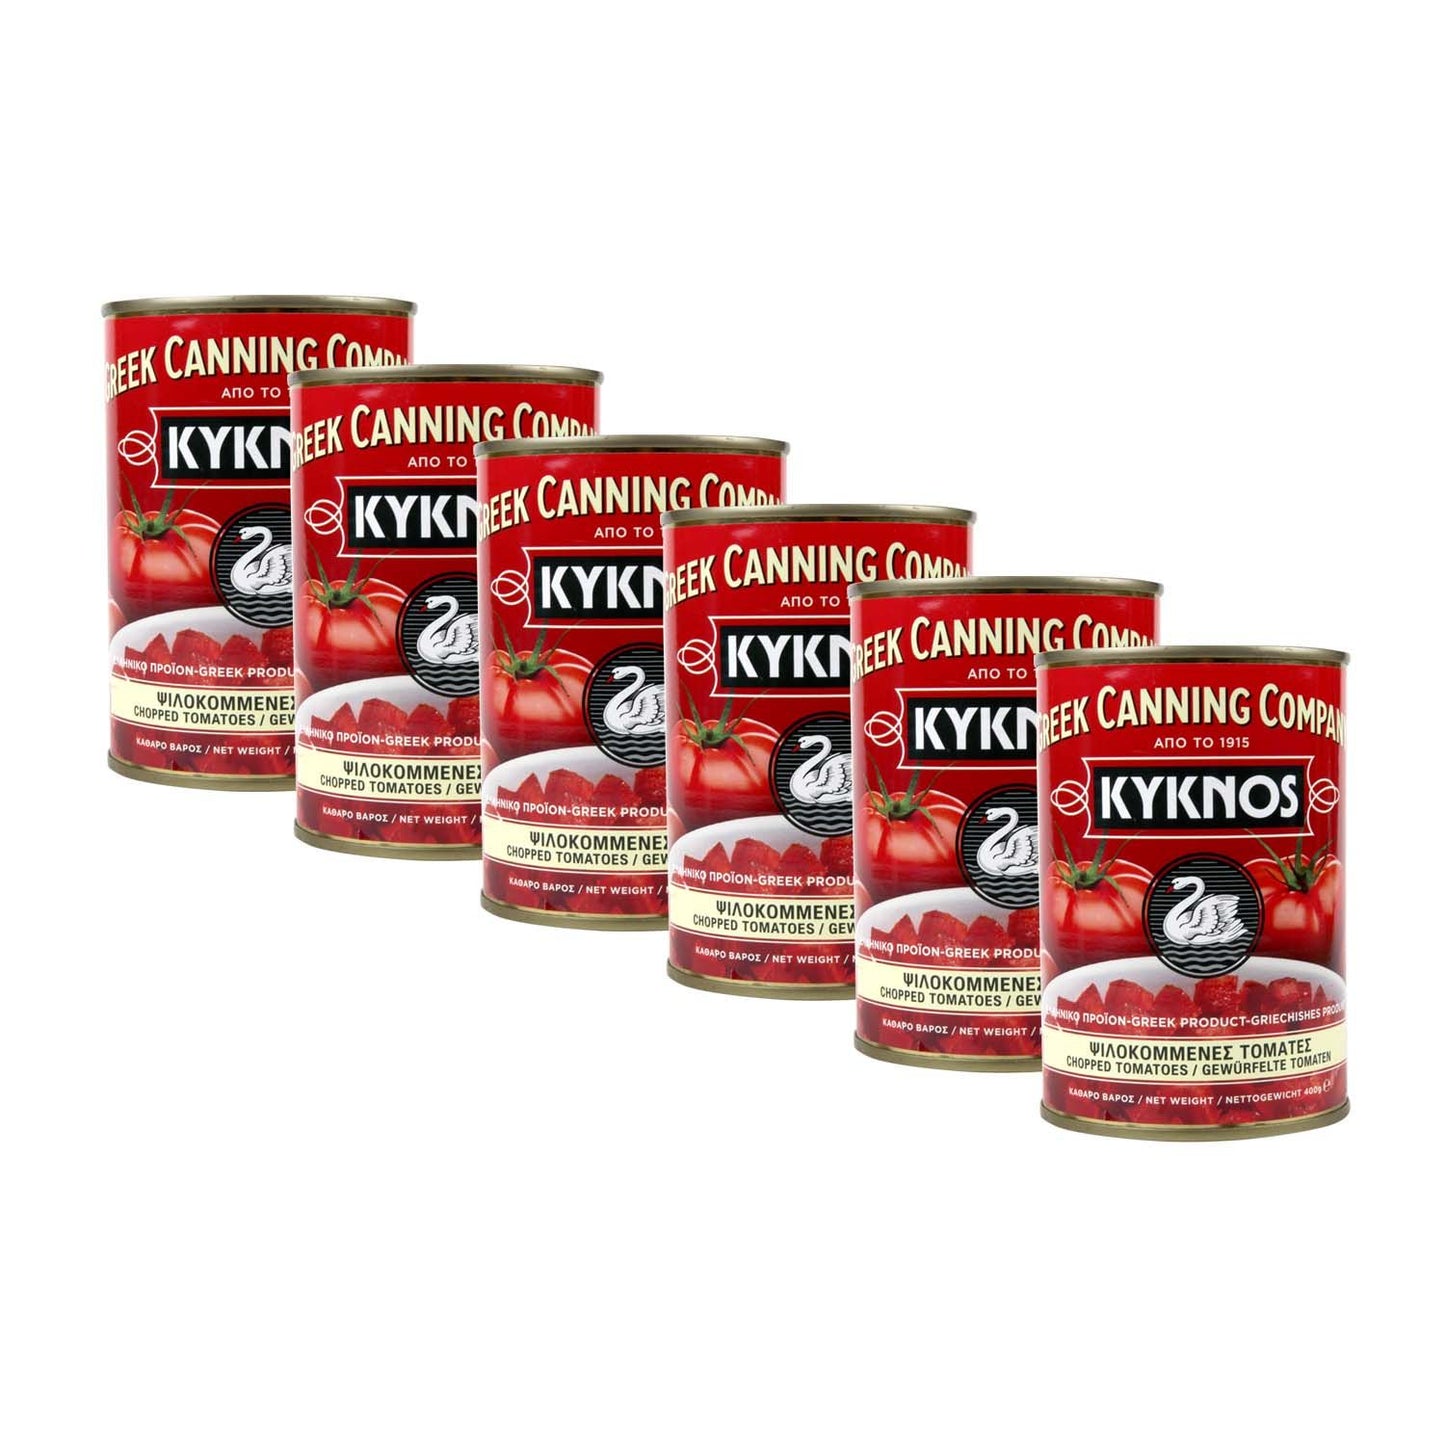 Gewürfelte Tomaten (stückig und gehackt ) im Tomatensaft - 6er Pack (6 x 400g)